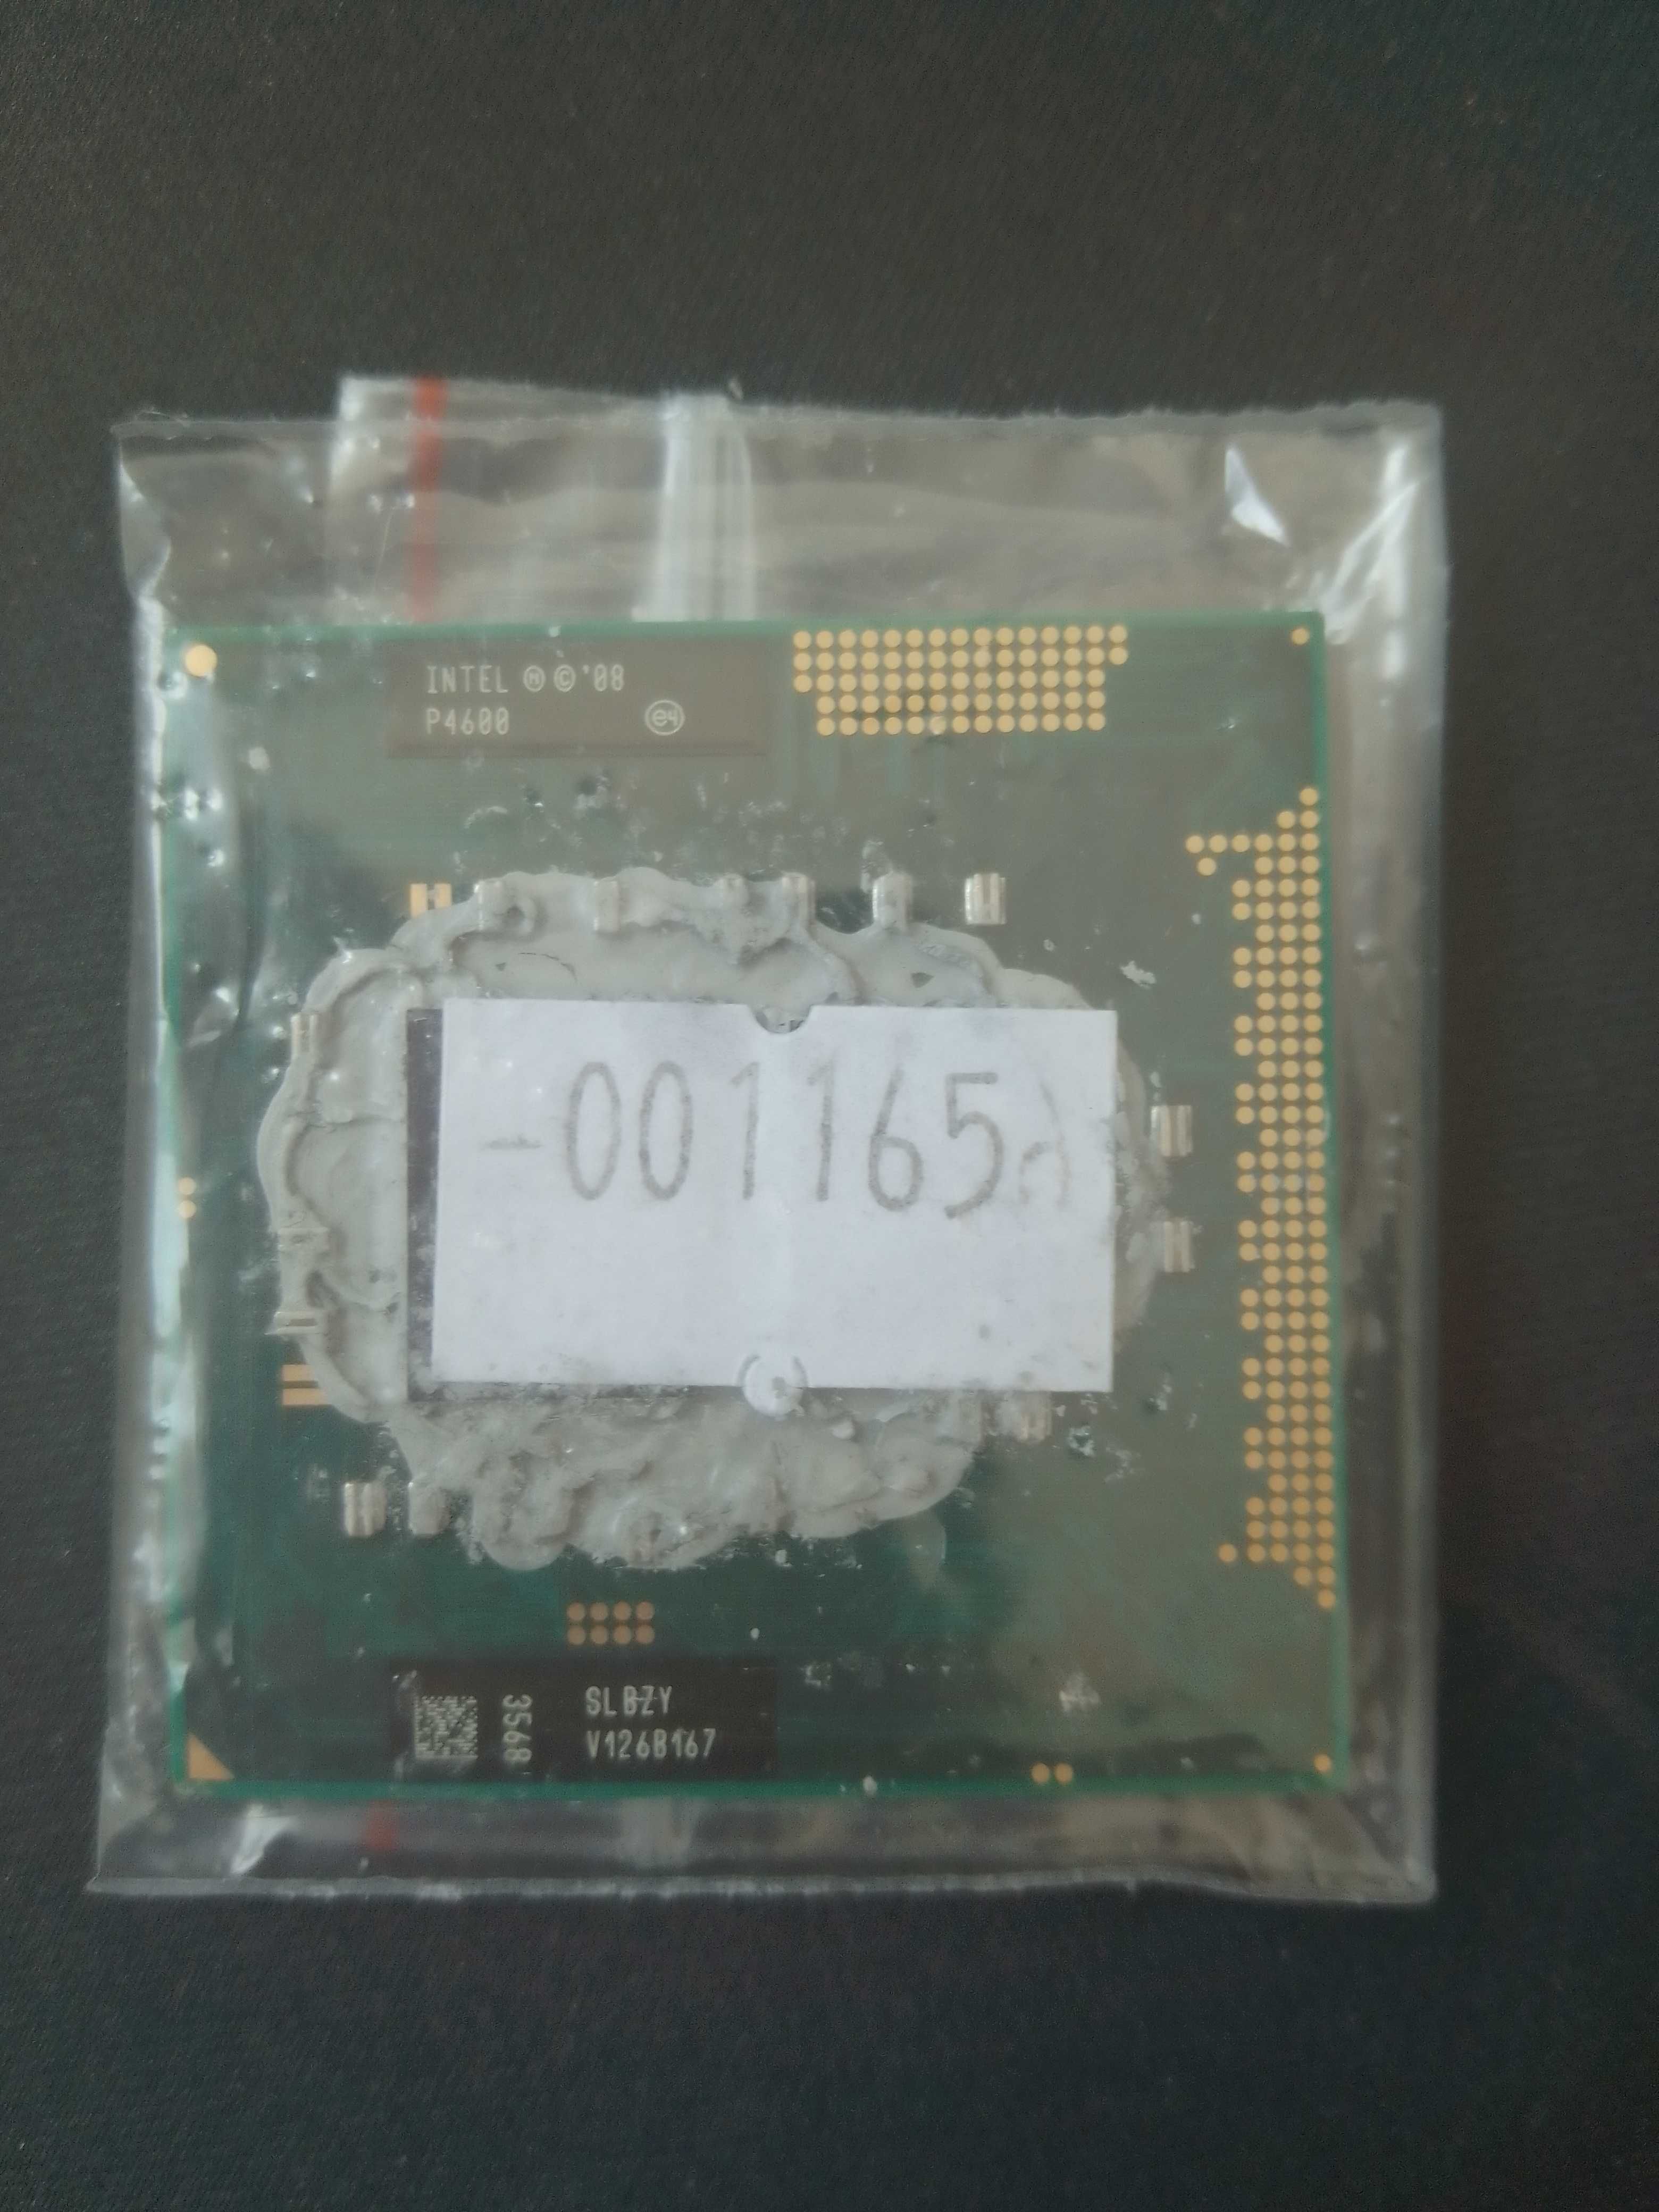 Procesor Intel Celeron P4600 2 rdzenie 2 wątki 2.00 GHz (001165)